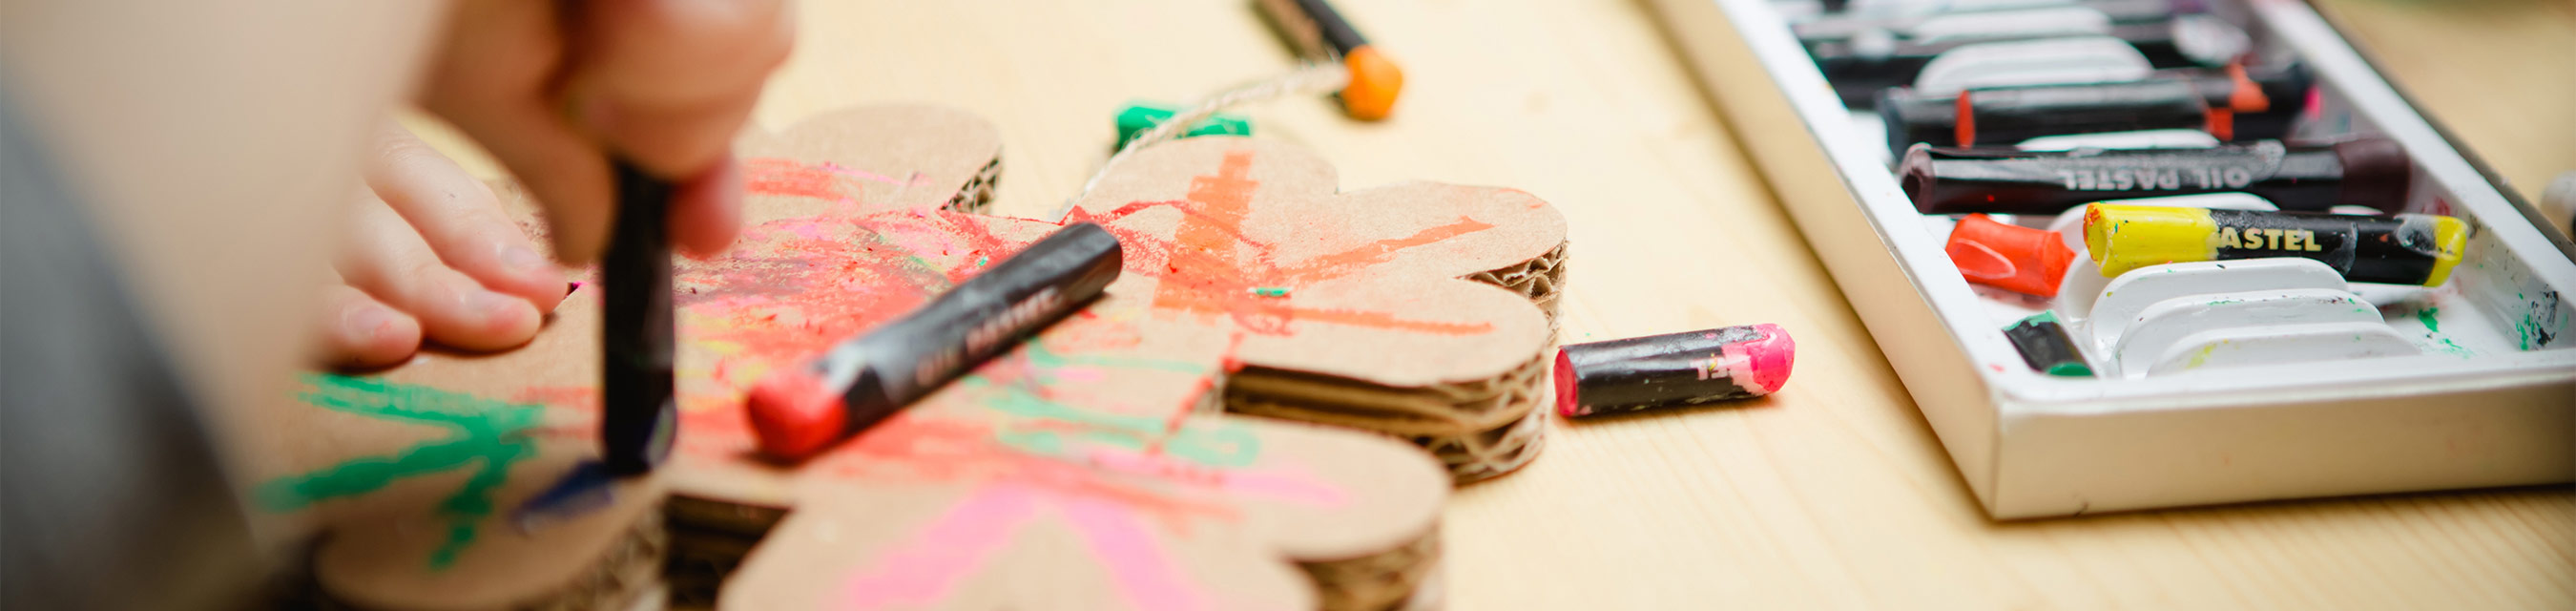 Närbild på en barnhand som målar med kritor. 